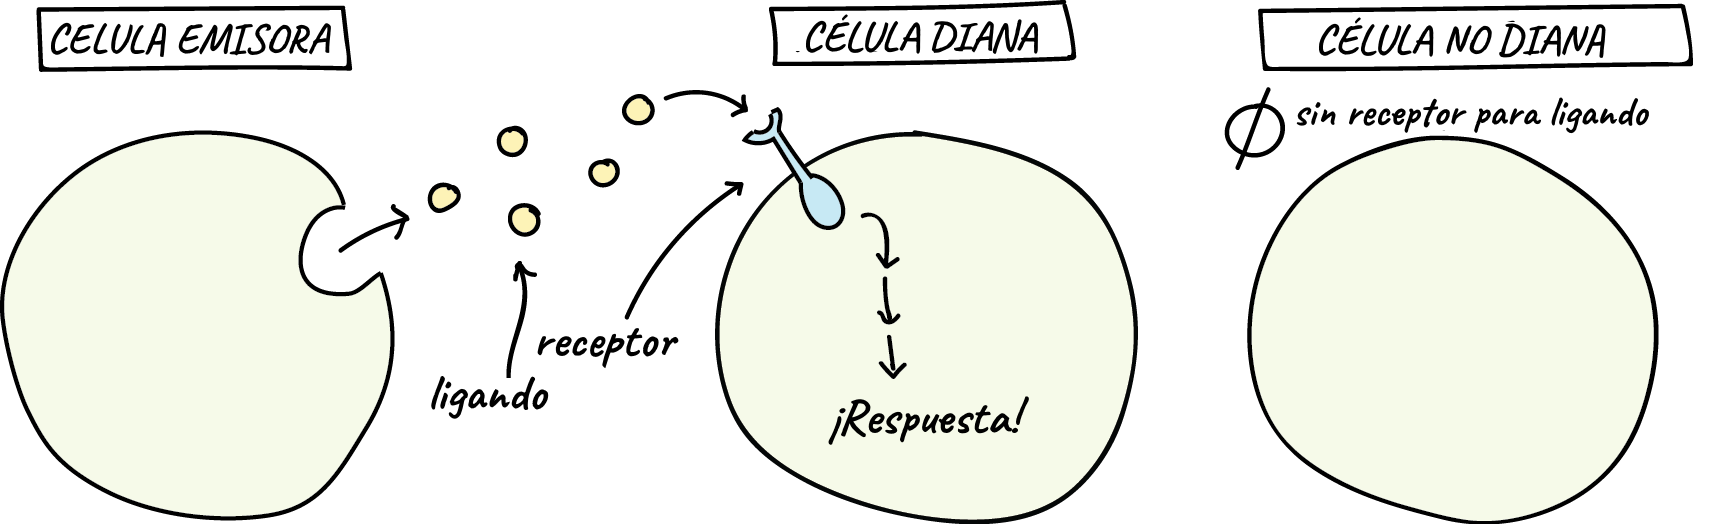 Célula emisora: está célula secreta un ligando.

Célula diana: esta célula tiene el receptor que puede unirse al ligando. El ligando se une al receptor y desencadena una cascada de señales dentro de la célula que finalmente generan una respuesta.

Célula no diana: esta célula no tiene los receptores para el ligando específico (aunque puede tener receptores de otros tipos). No percibe al ligando y por lo tanto no genera una respuesta.